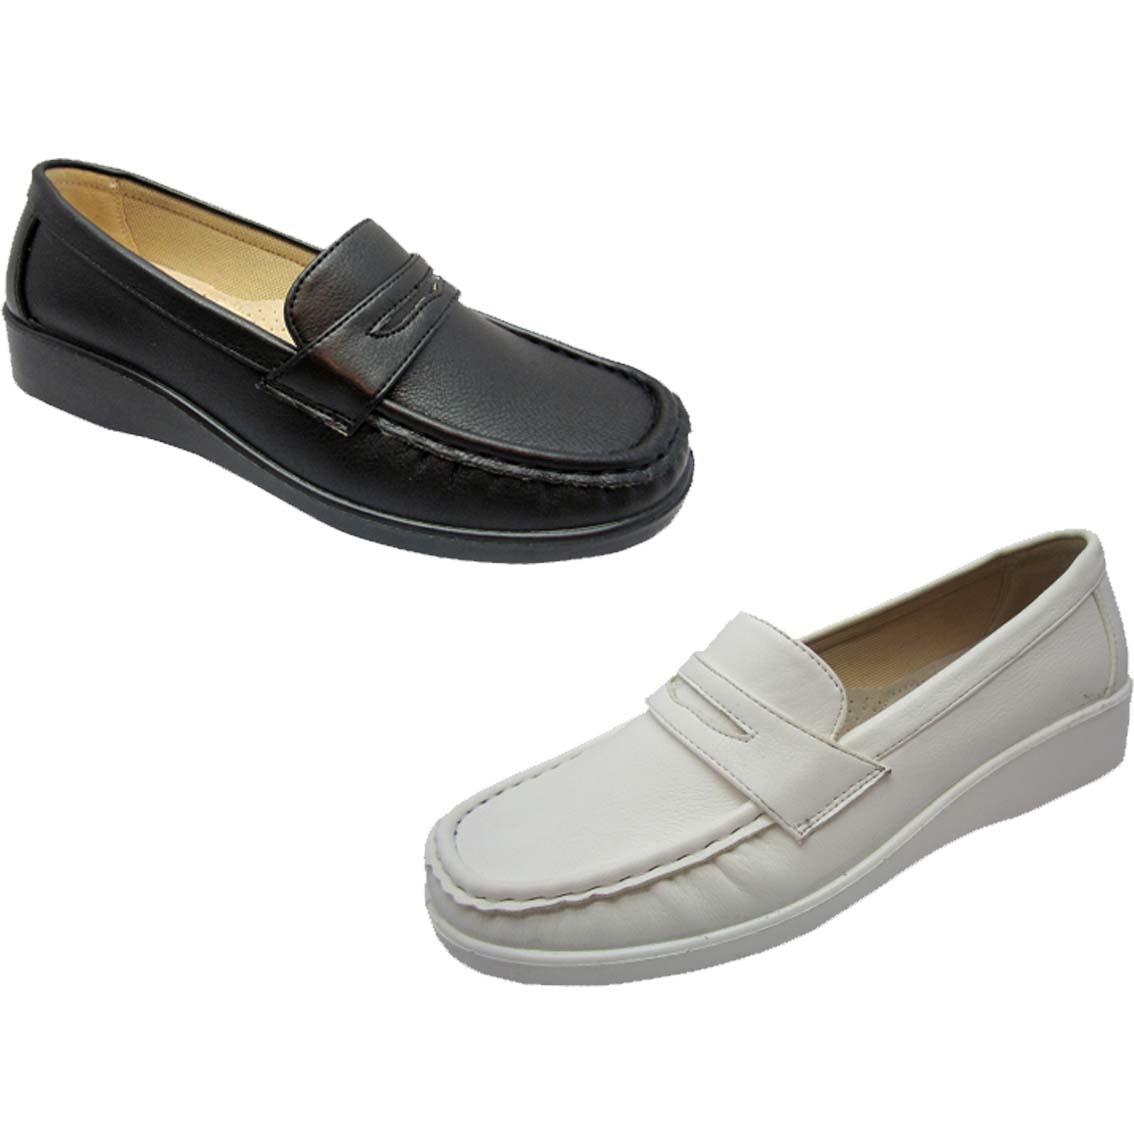 Wholesale Men's Shoes For Men Dress Loafer Carl NFW1